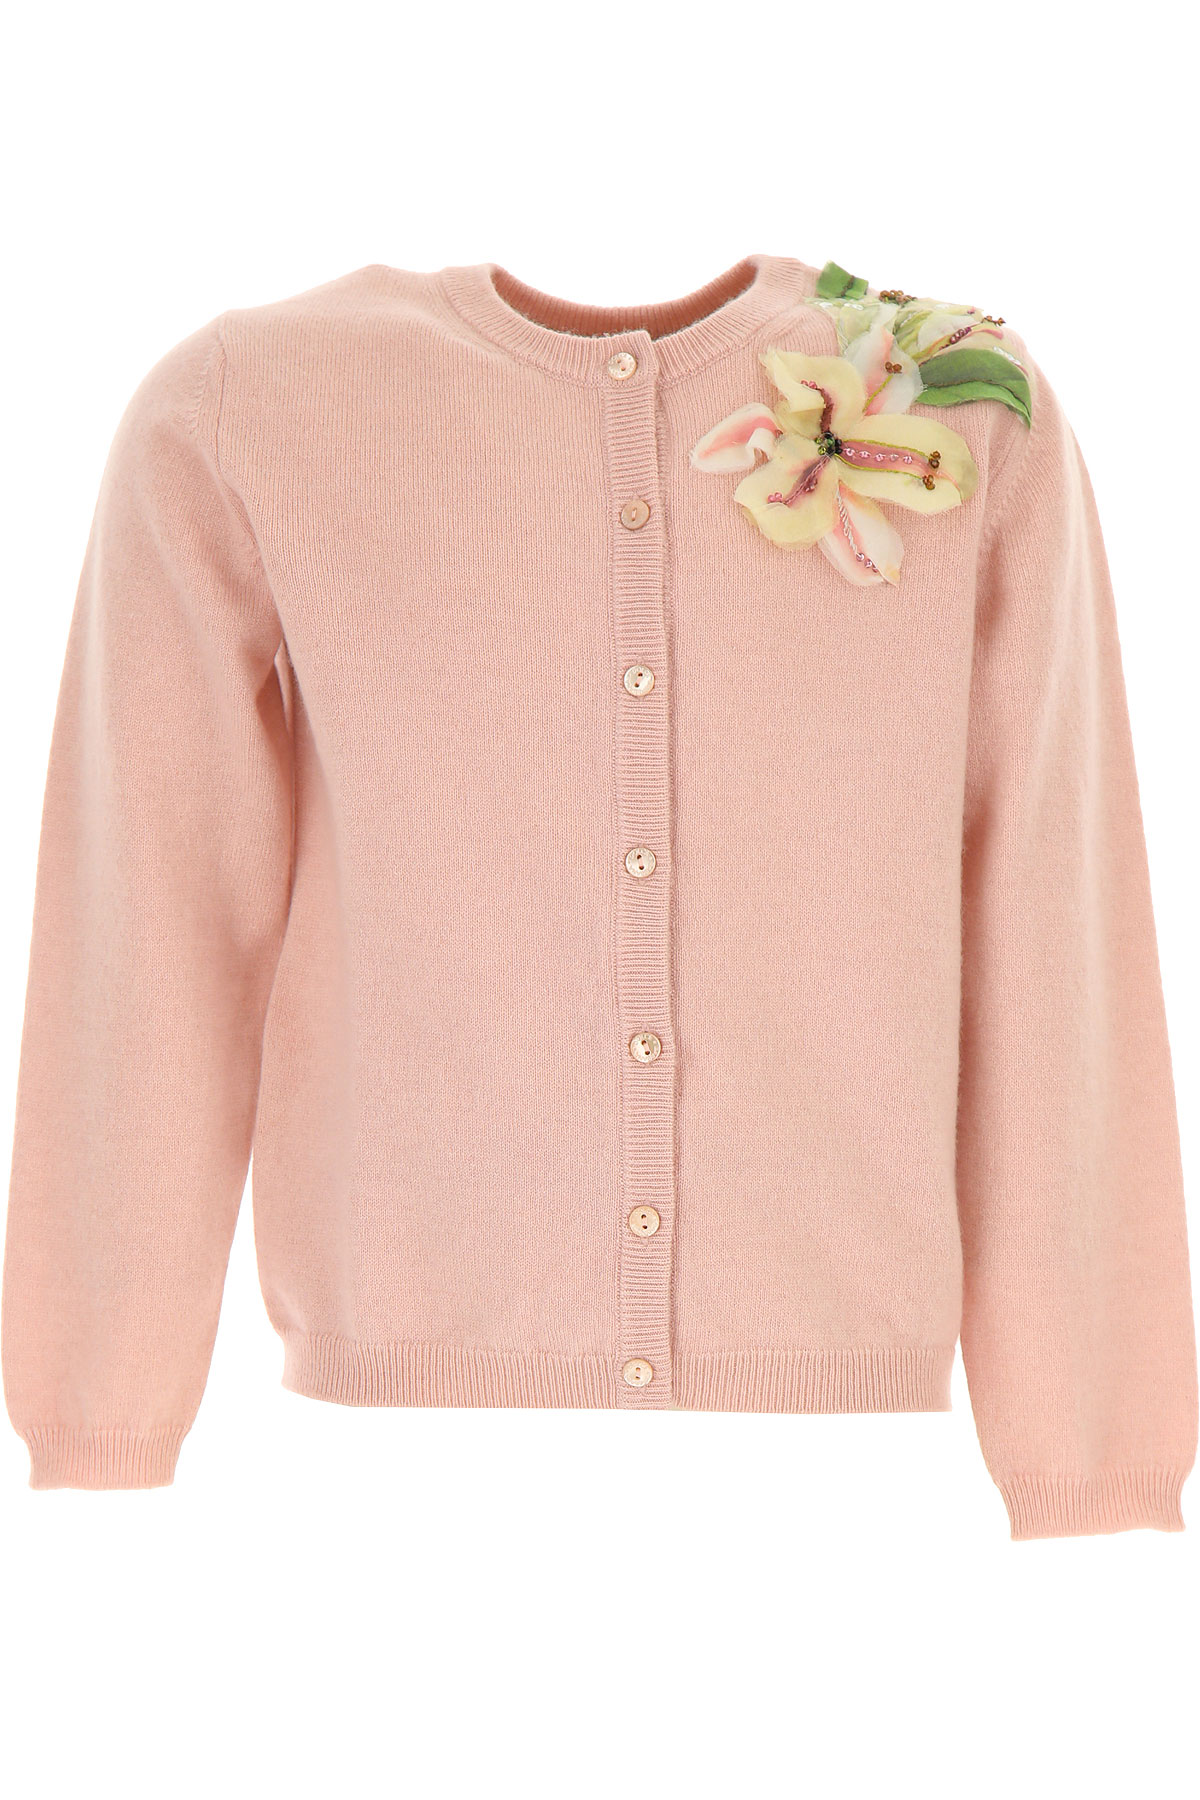 Dolce & Gabbana Kinder Pullover für Mädchen Günstig im Sale, Pink, Cashmere, 2017, 6Y 8Y